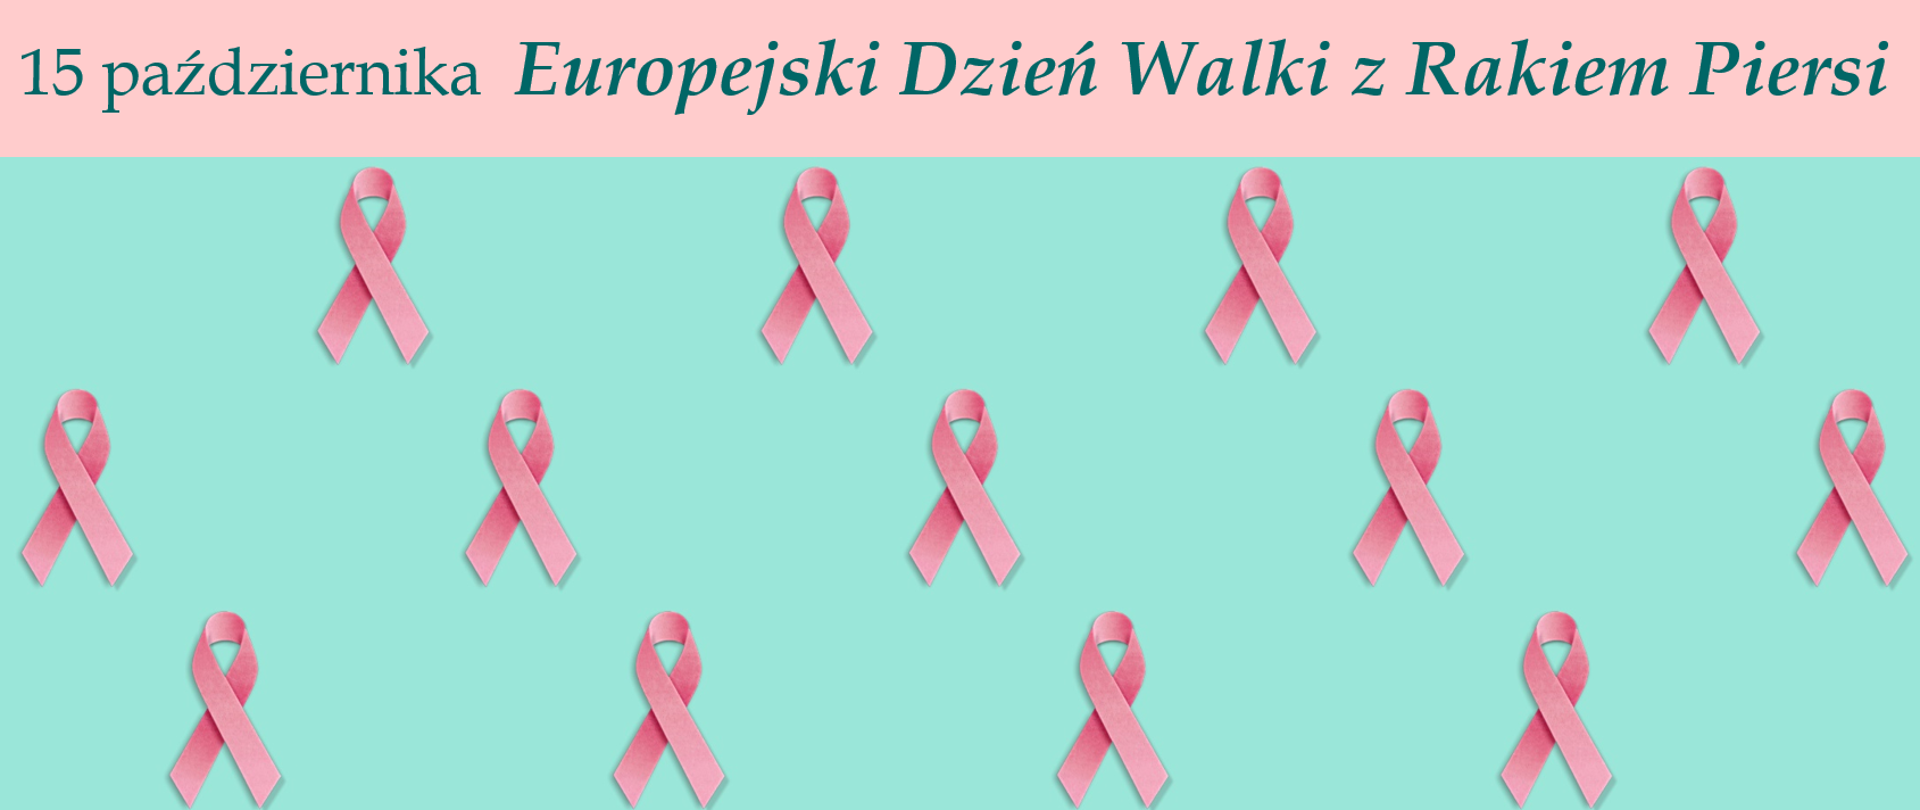 Na turkusowym tle różowe wstążeczki w rzędach. Na górze napis: 15 października Europejski Dzień Walki z Rakiem Piersi